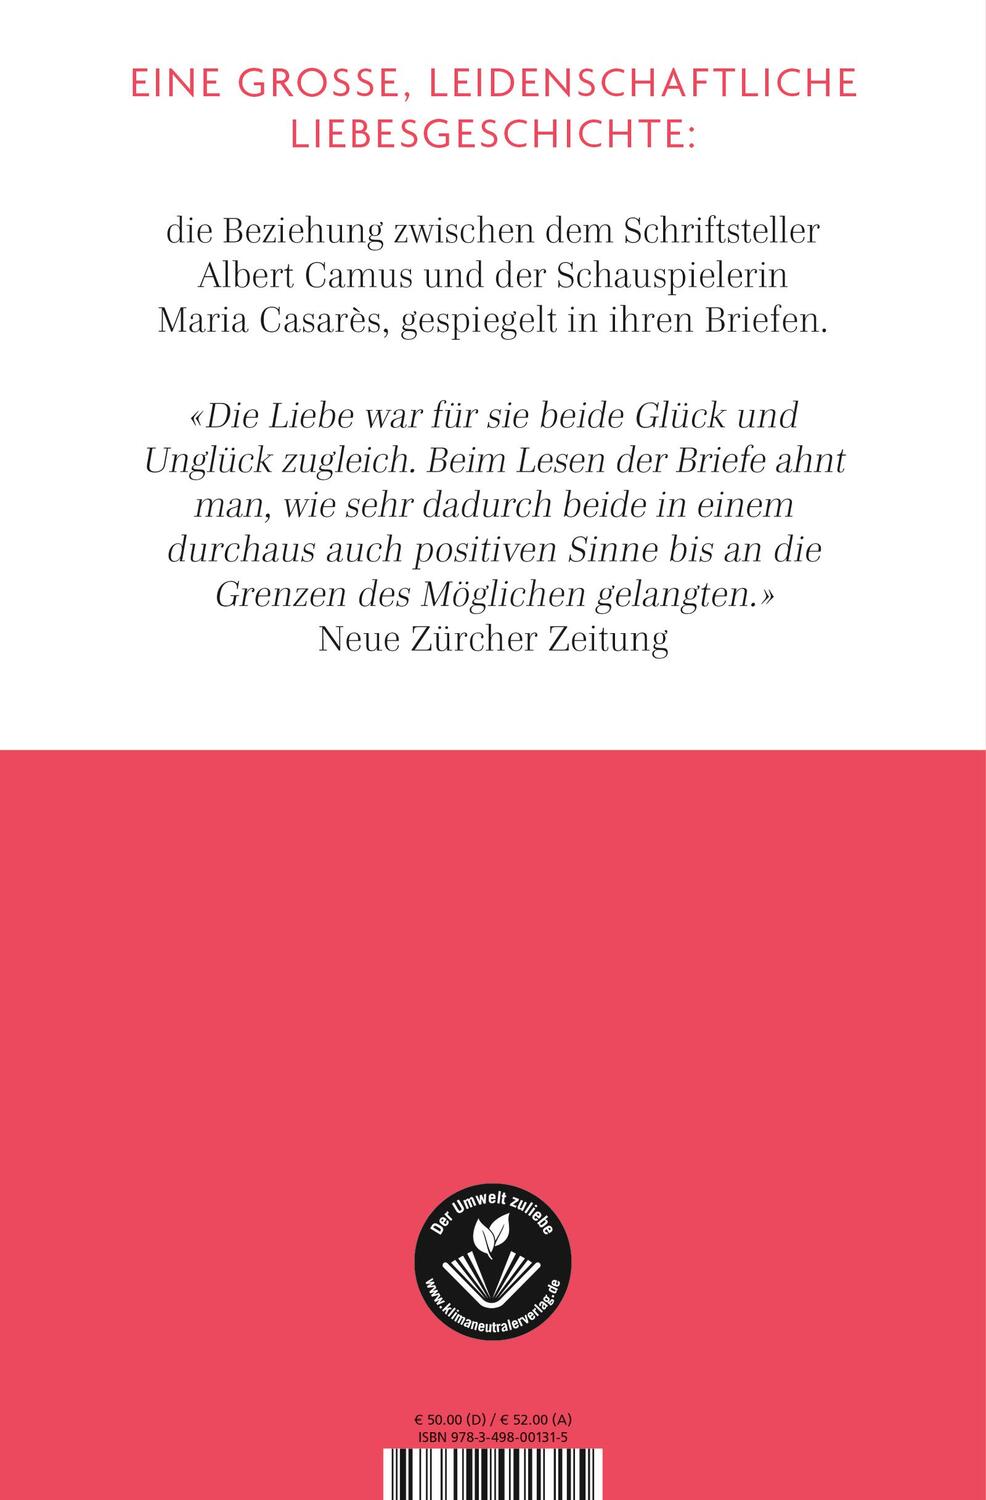 Rückseite: 9783498001315 | Schreib ohne Furcht und viel | Albert Camus (u. a.) | Buch | 1568 S.